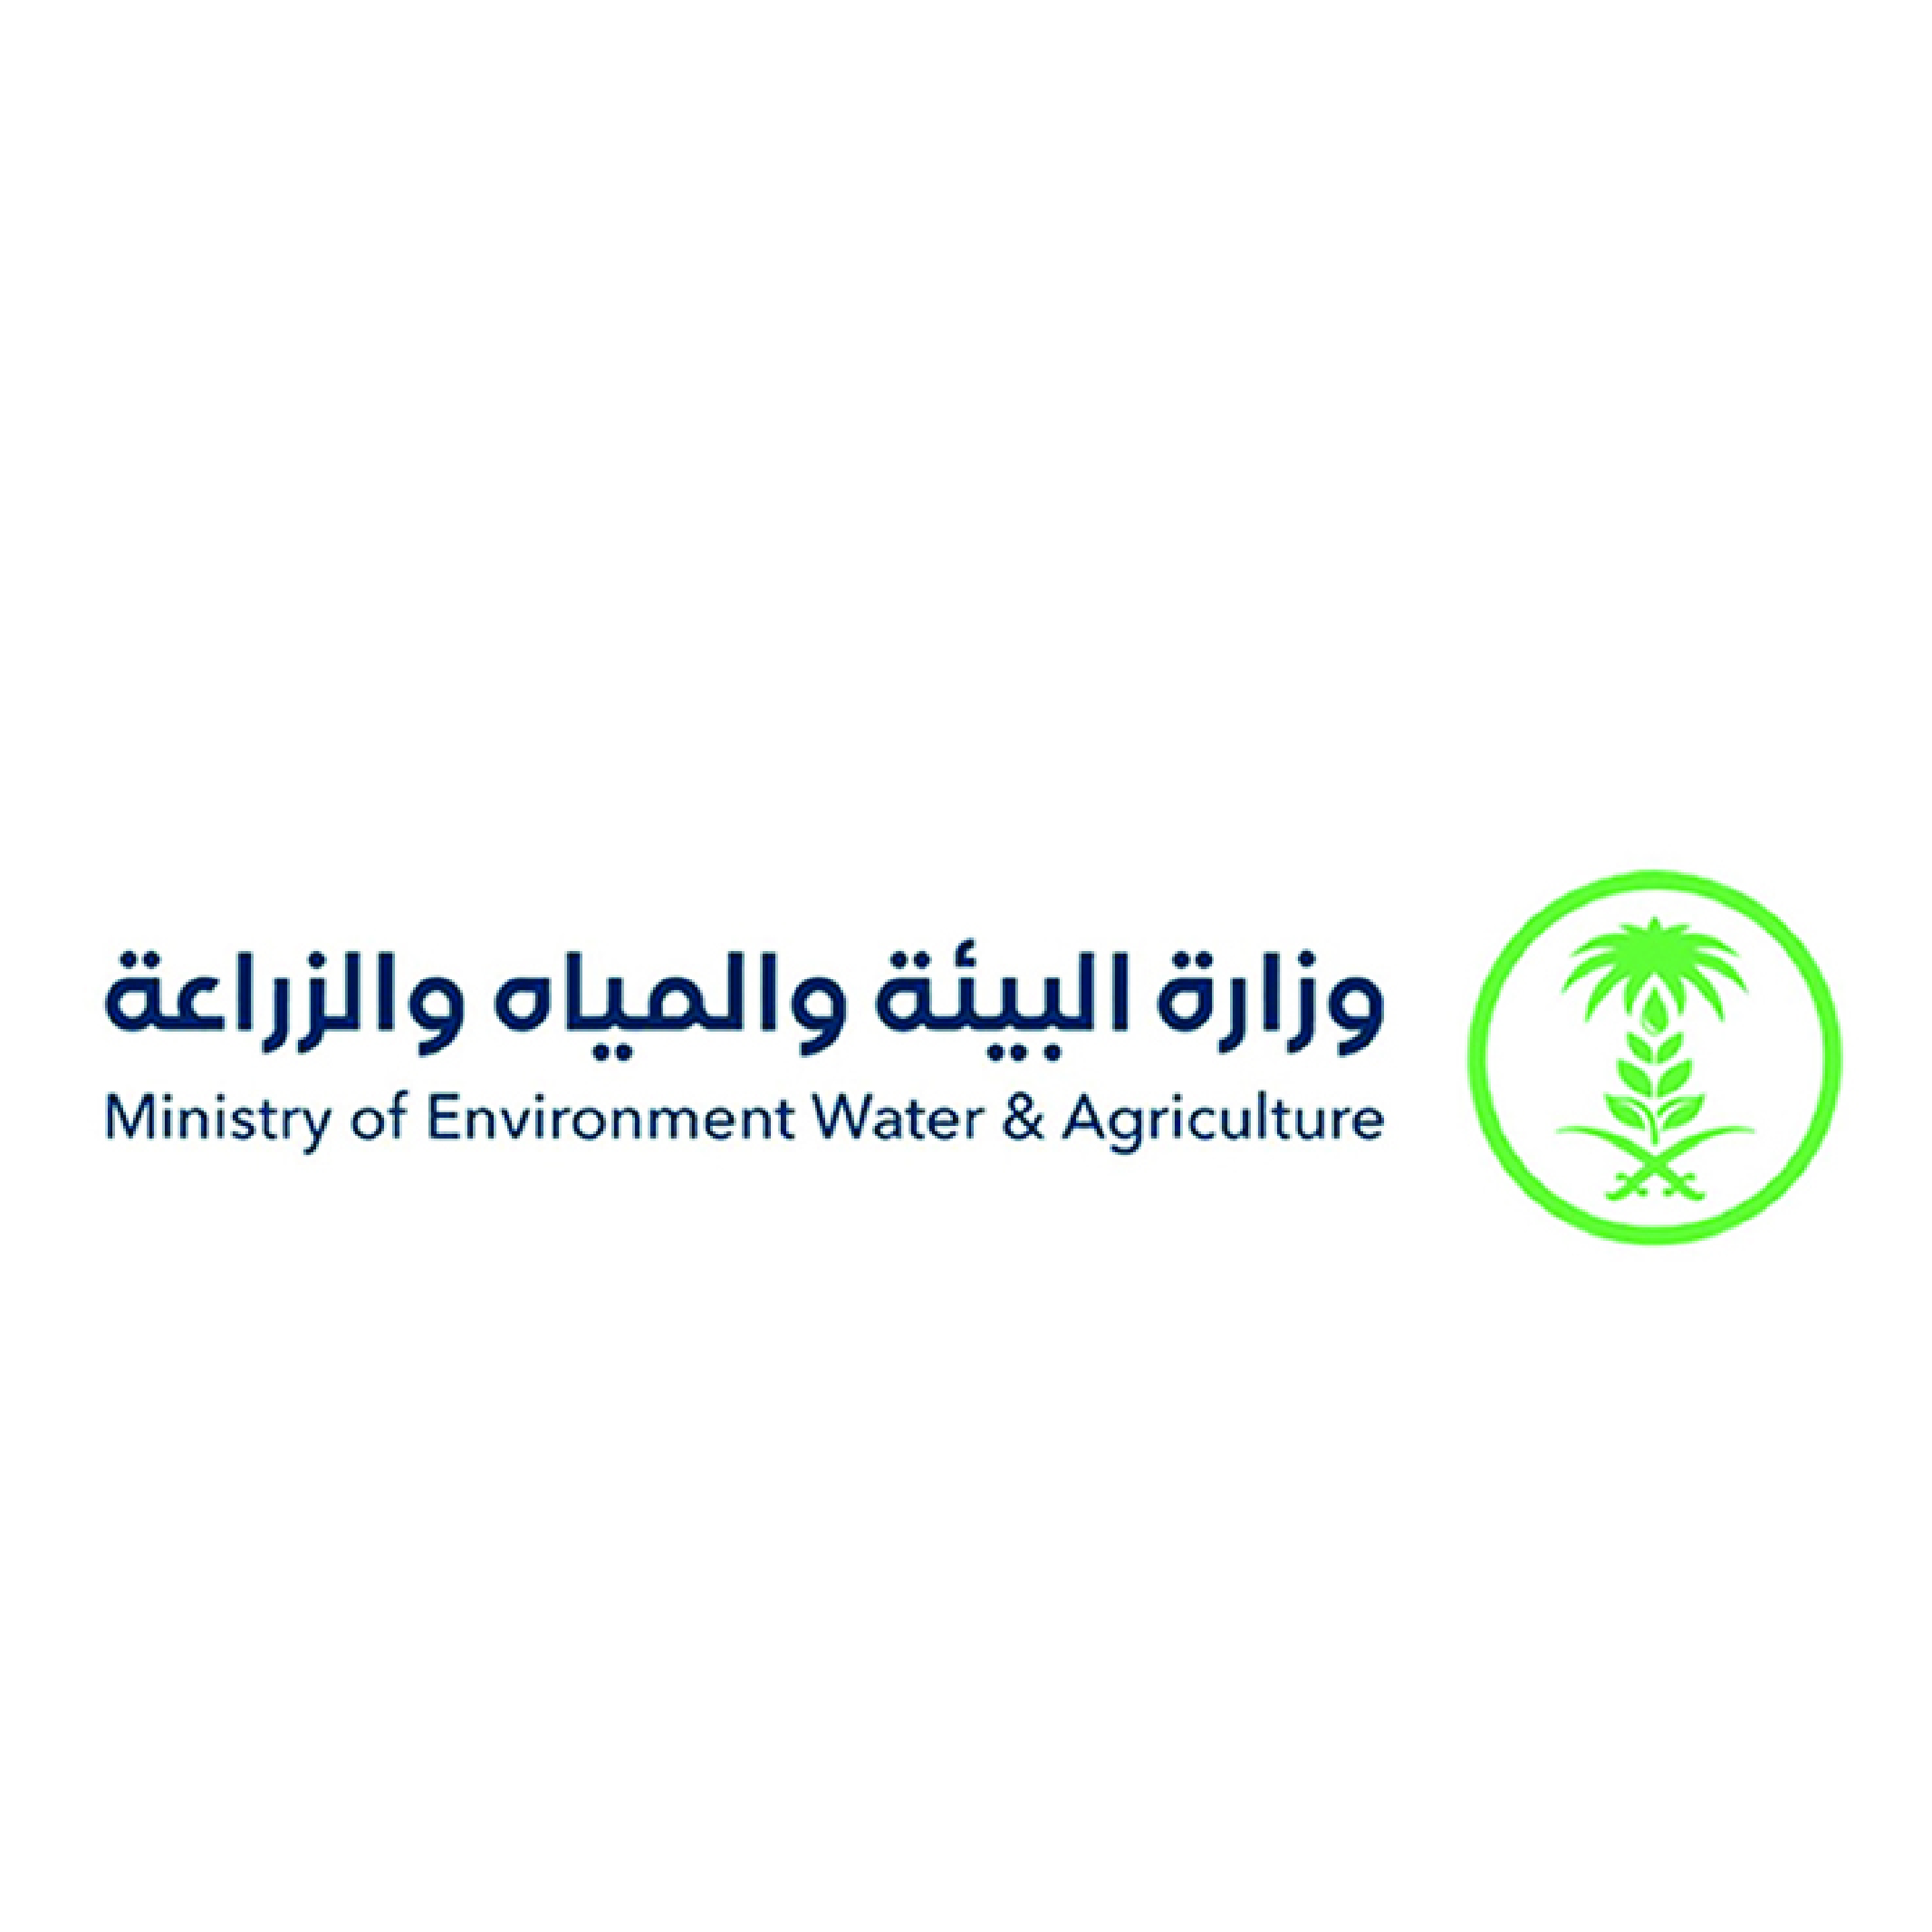 وزارة البيئة والمياة والزراعة 